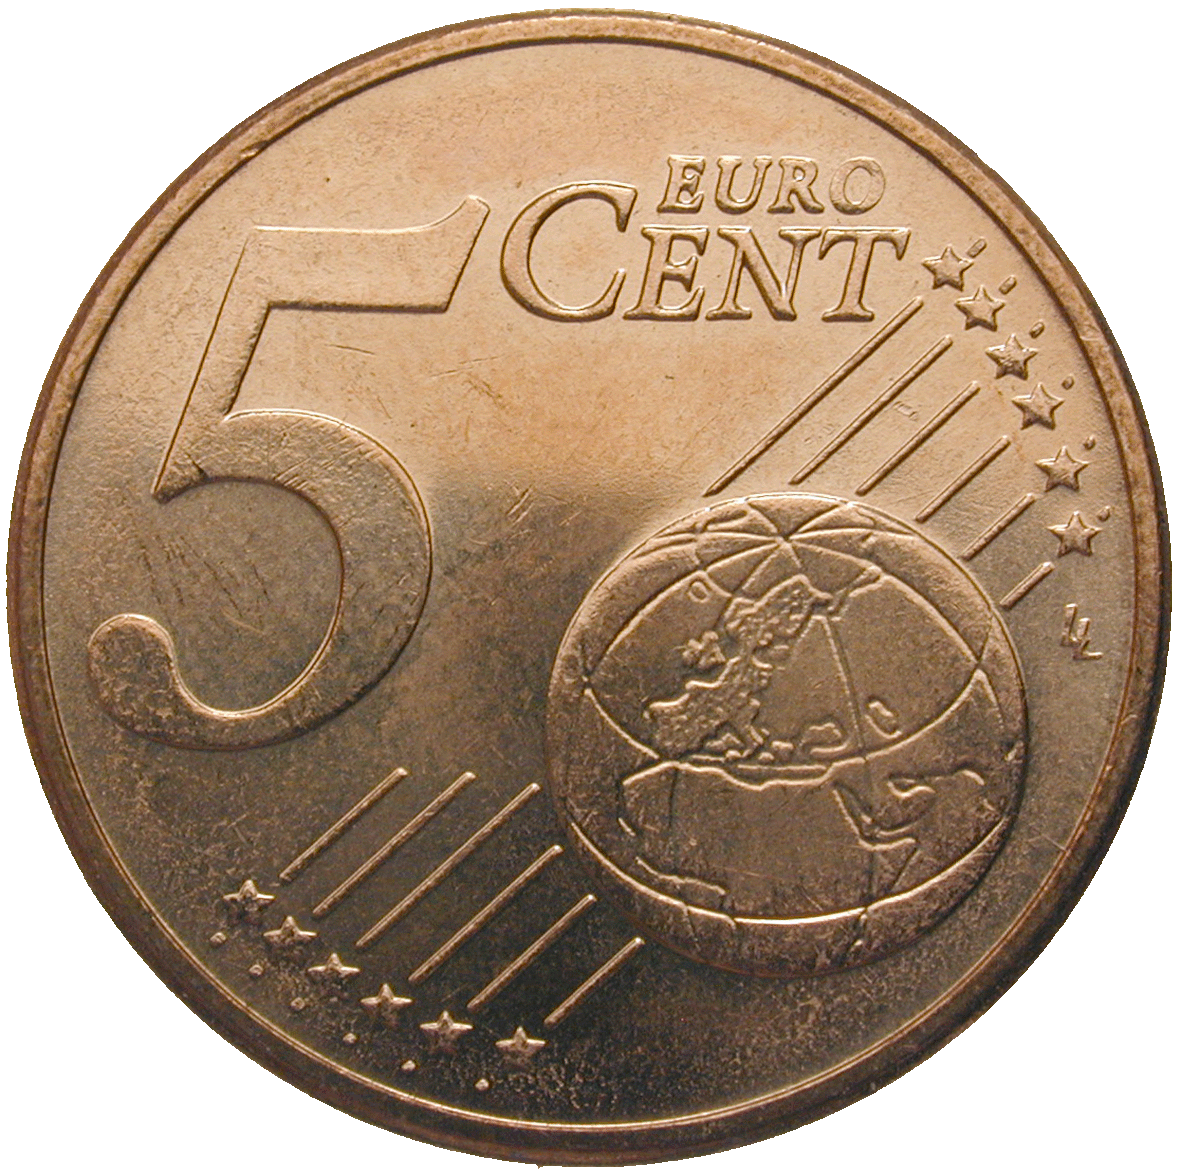 Republik Griechenland, 5 Eurocent 2002 (reverse)